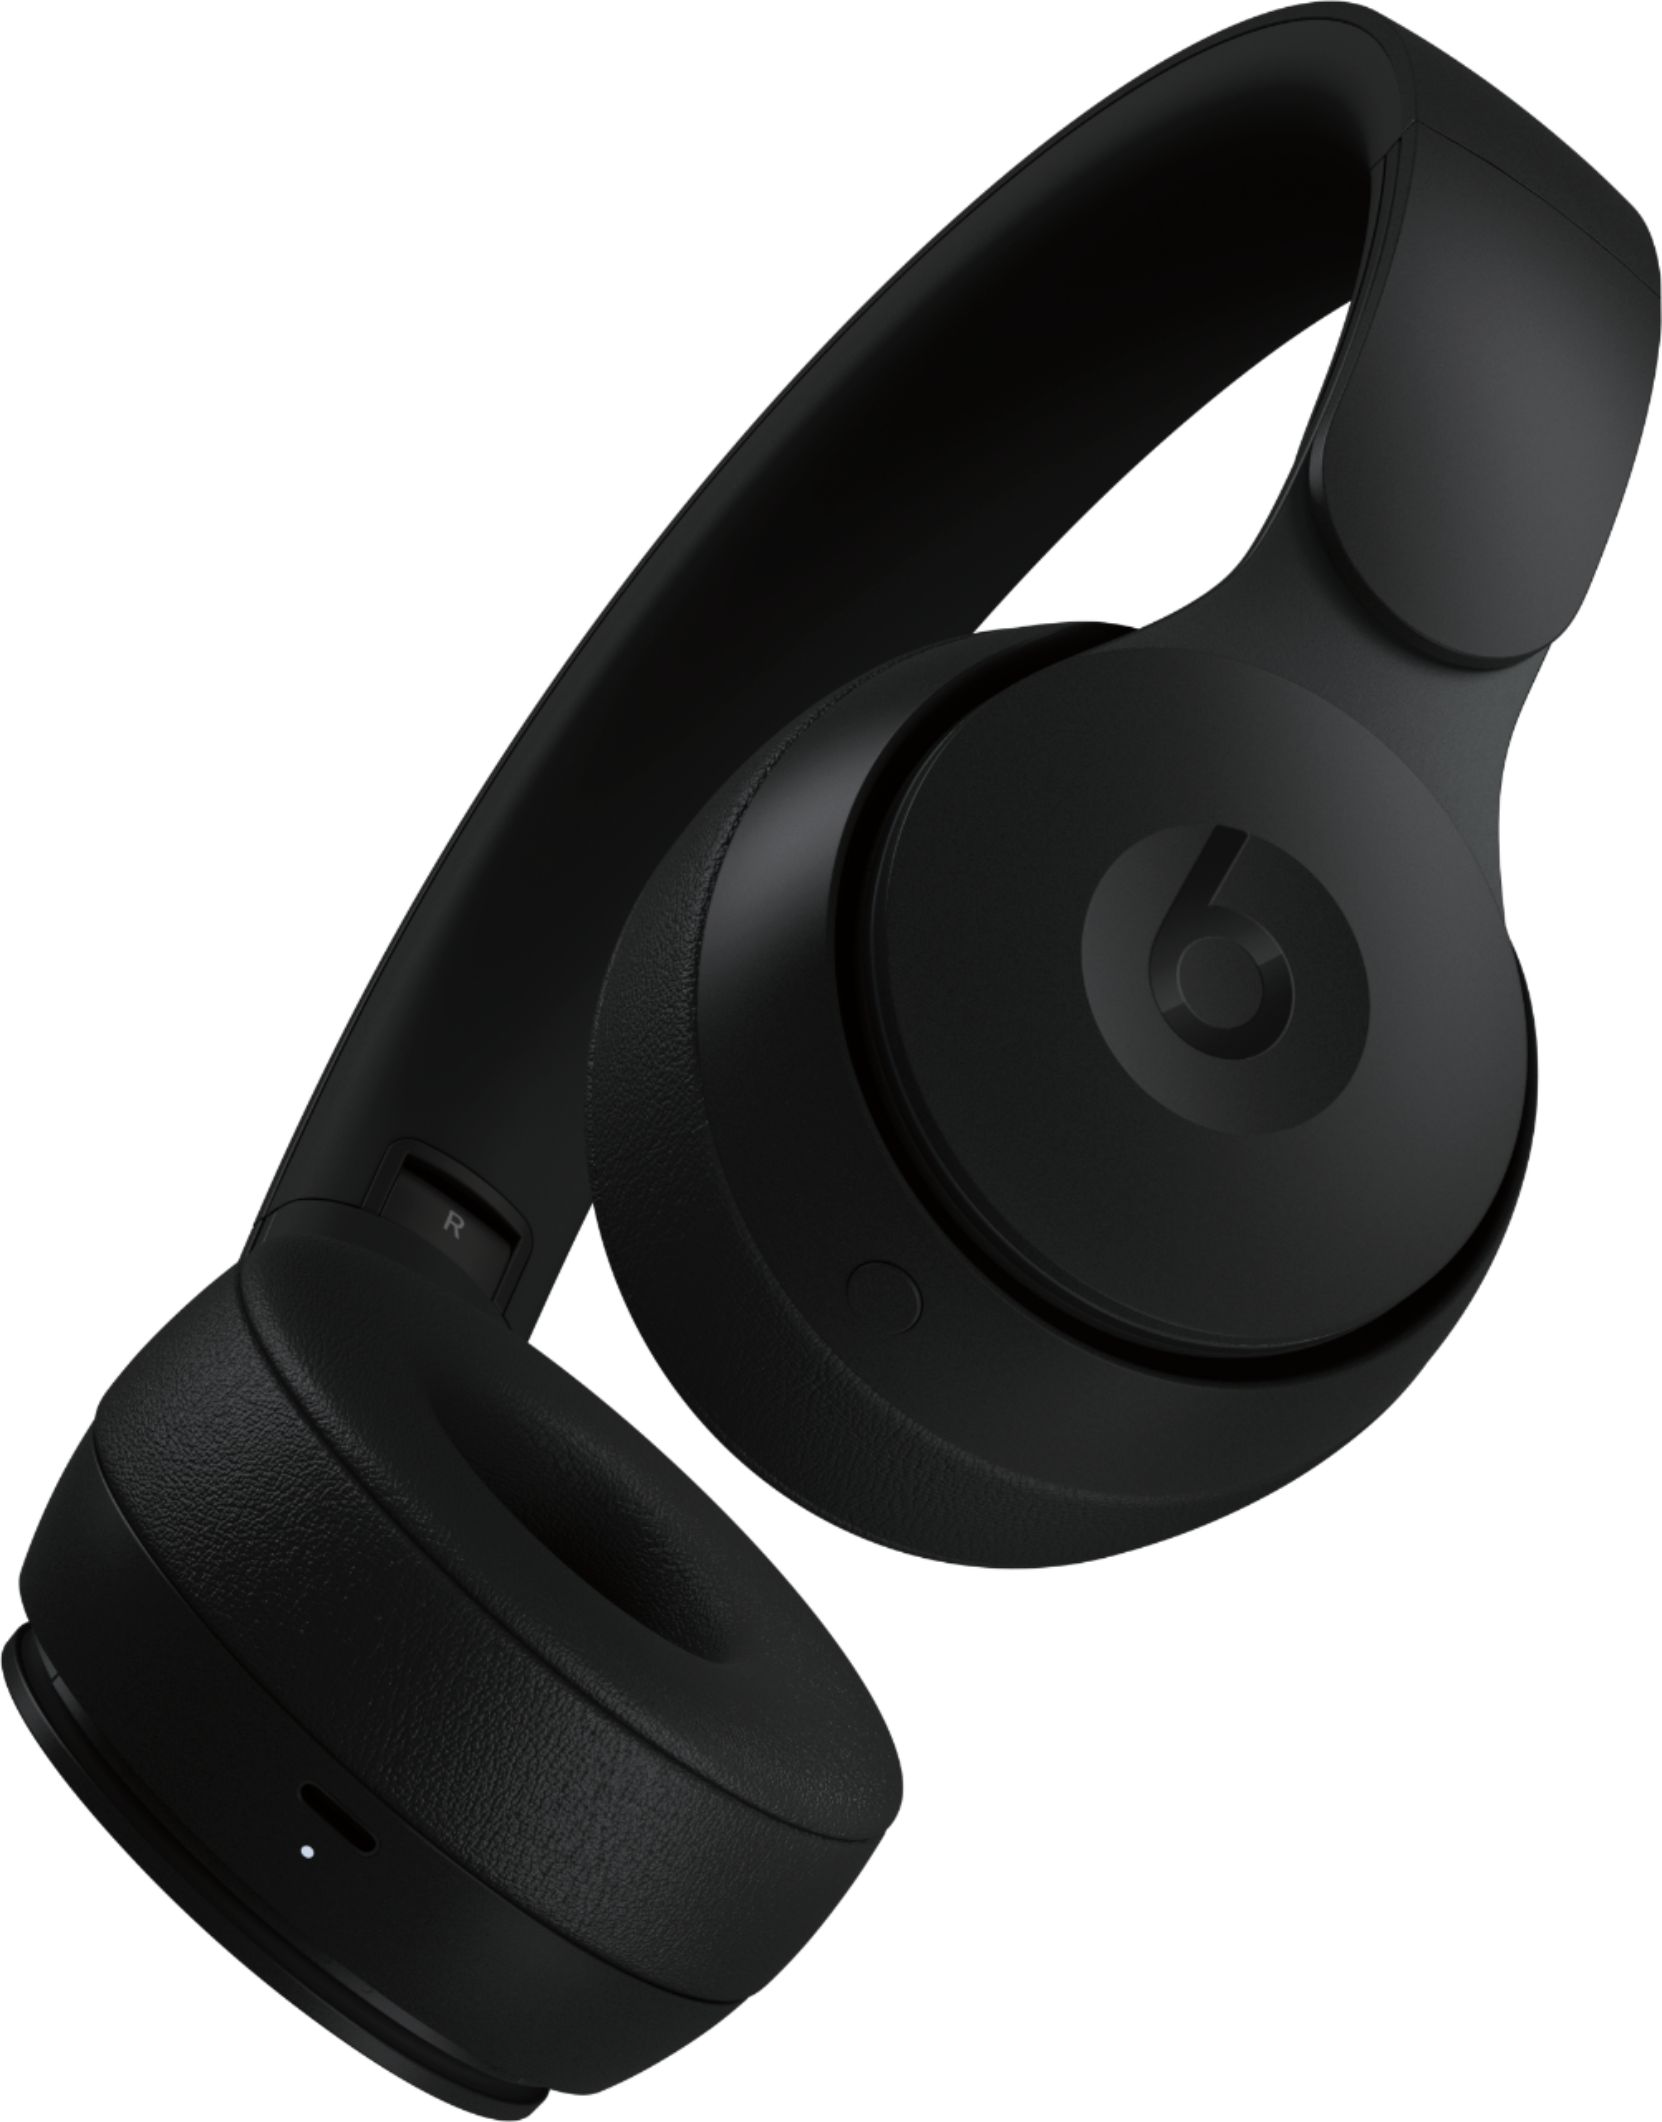 Beats by Dr. Dre Solo Pro Wireless Noise Cancelling On-Ear Headphones Black  MRJ62LL/A - Best Buy